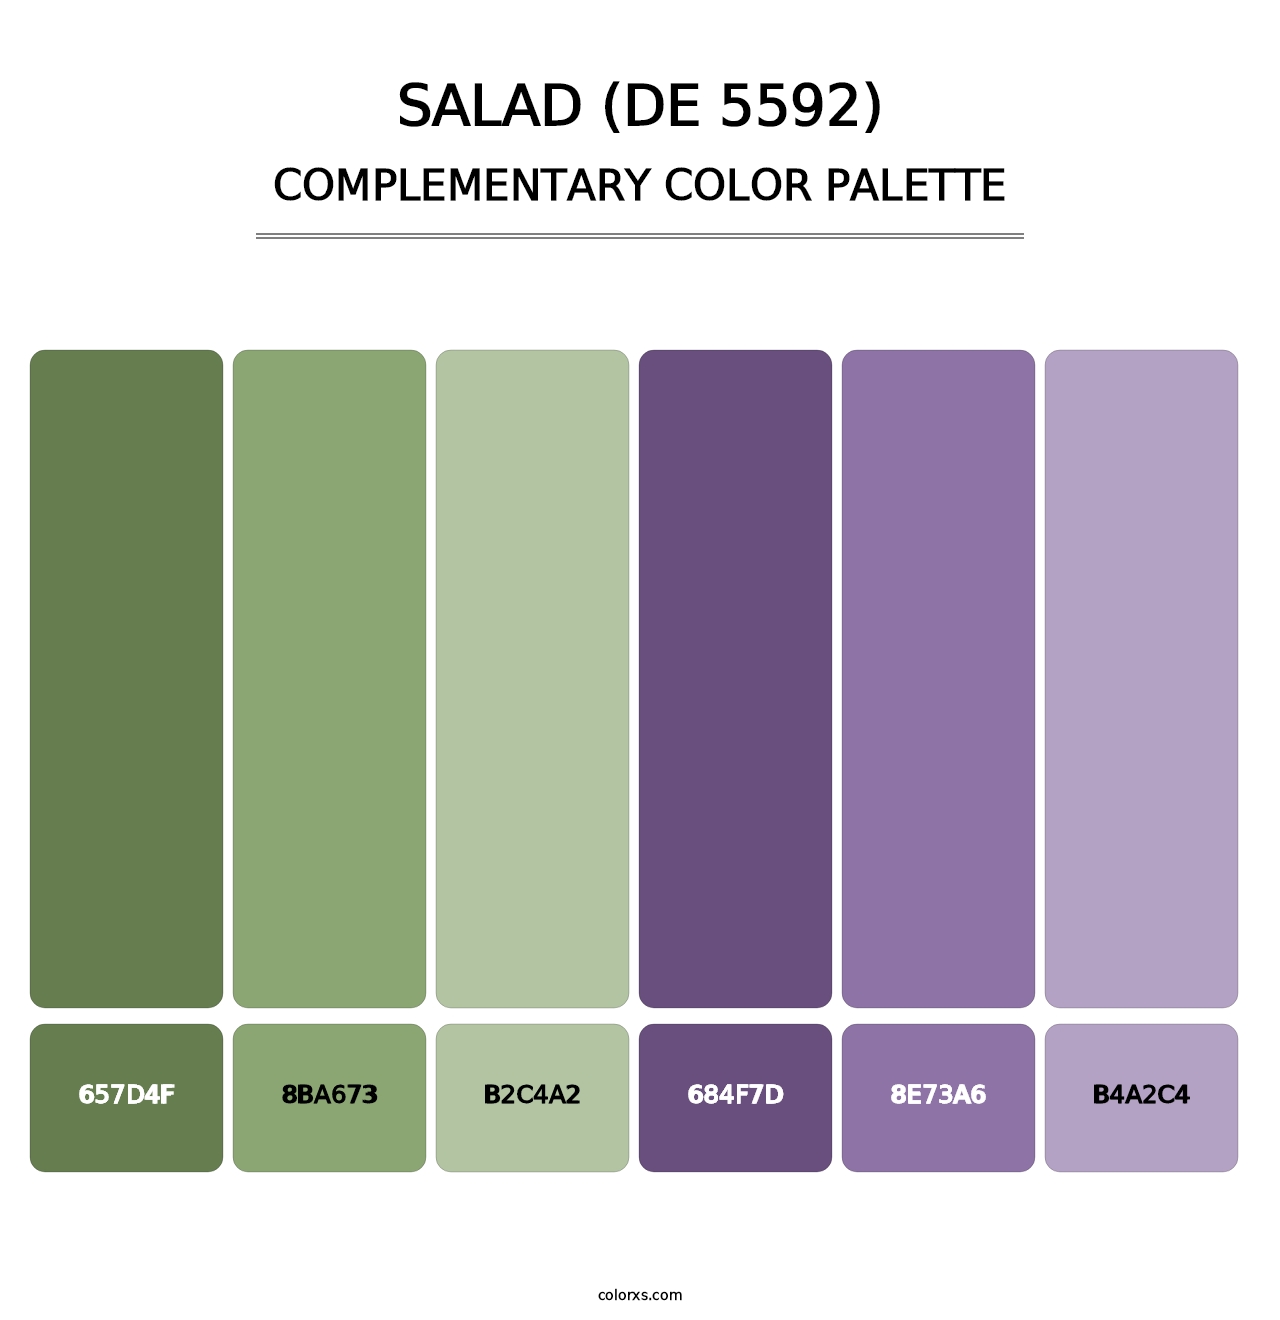 Salad (DE 5592) - Complementary Color Palette